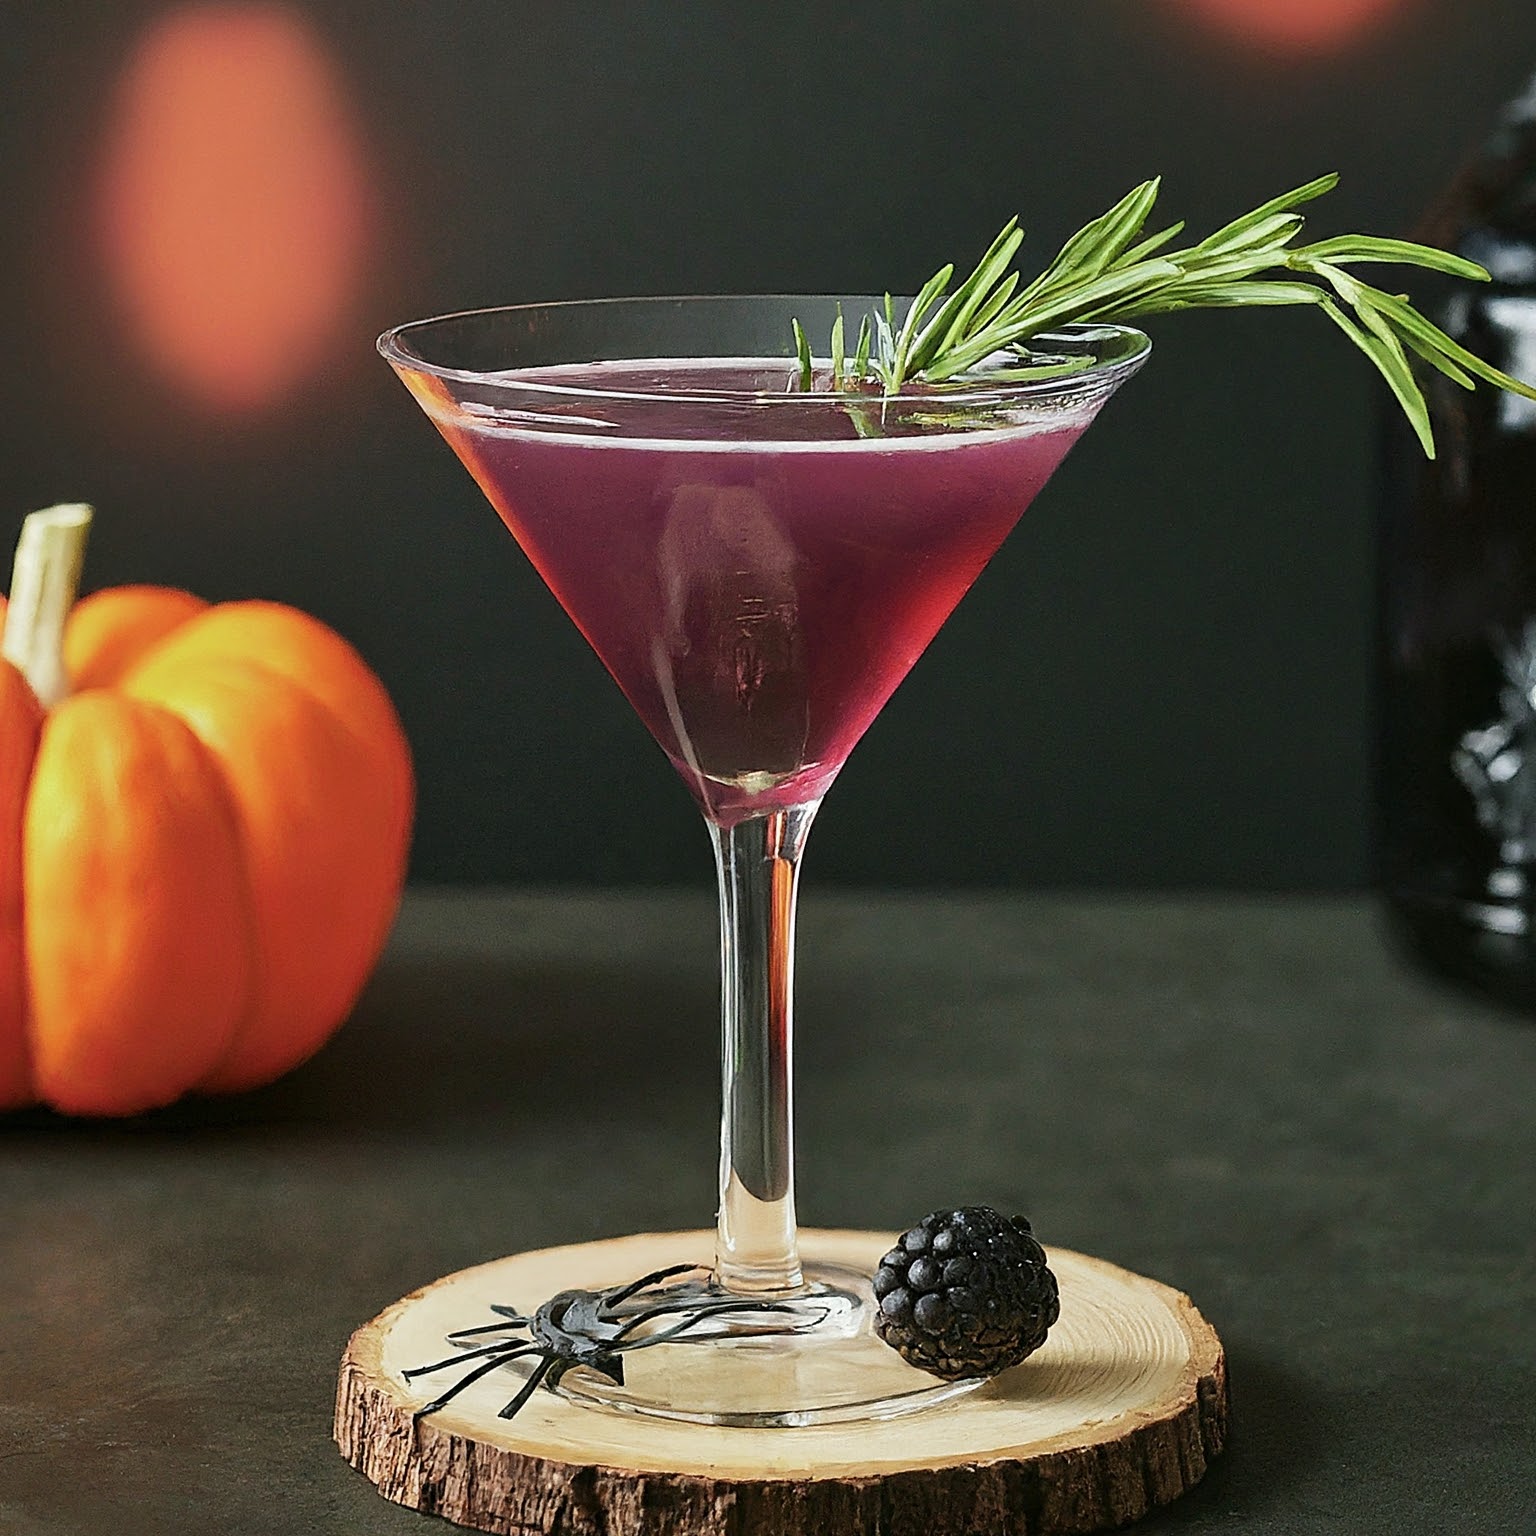 Witches' Brew Martini in a martini glass